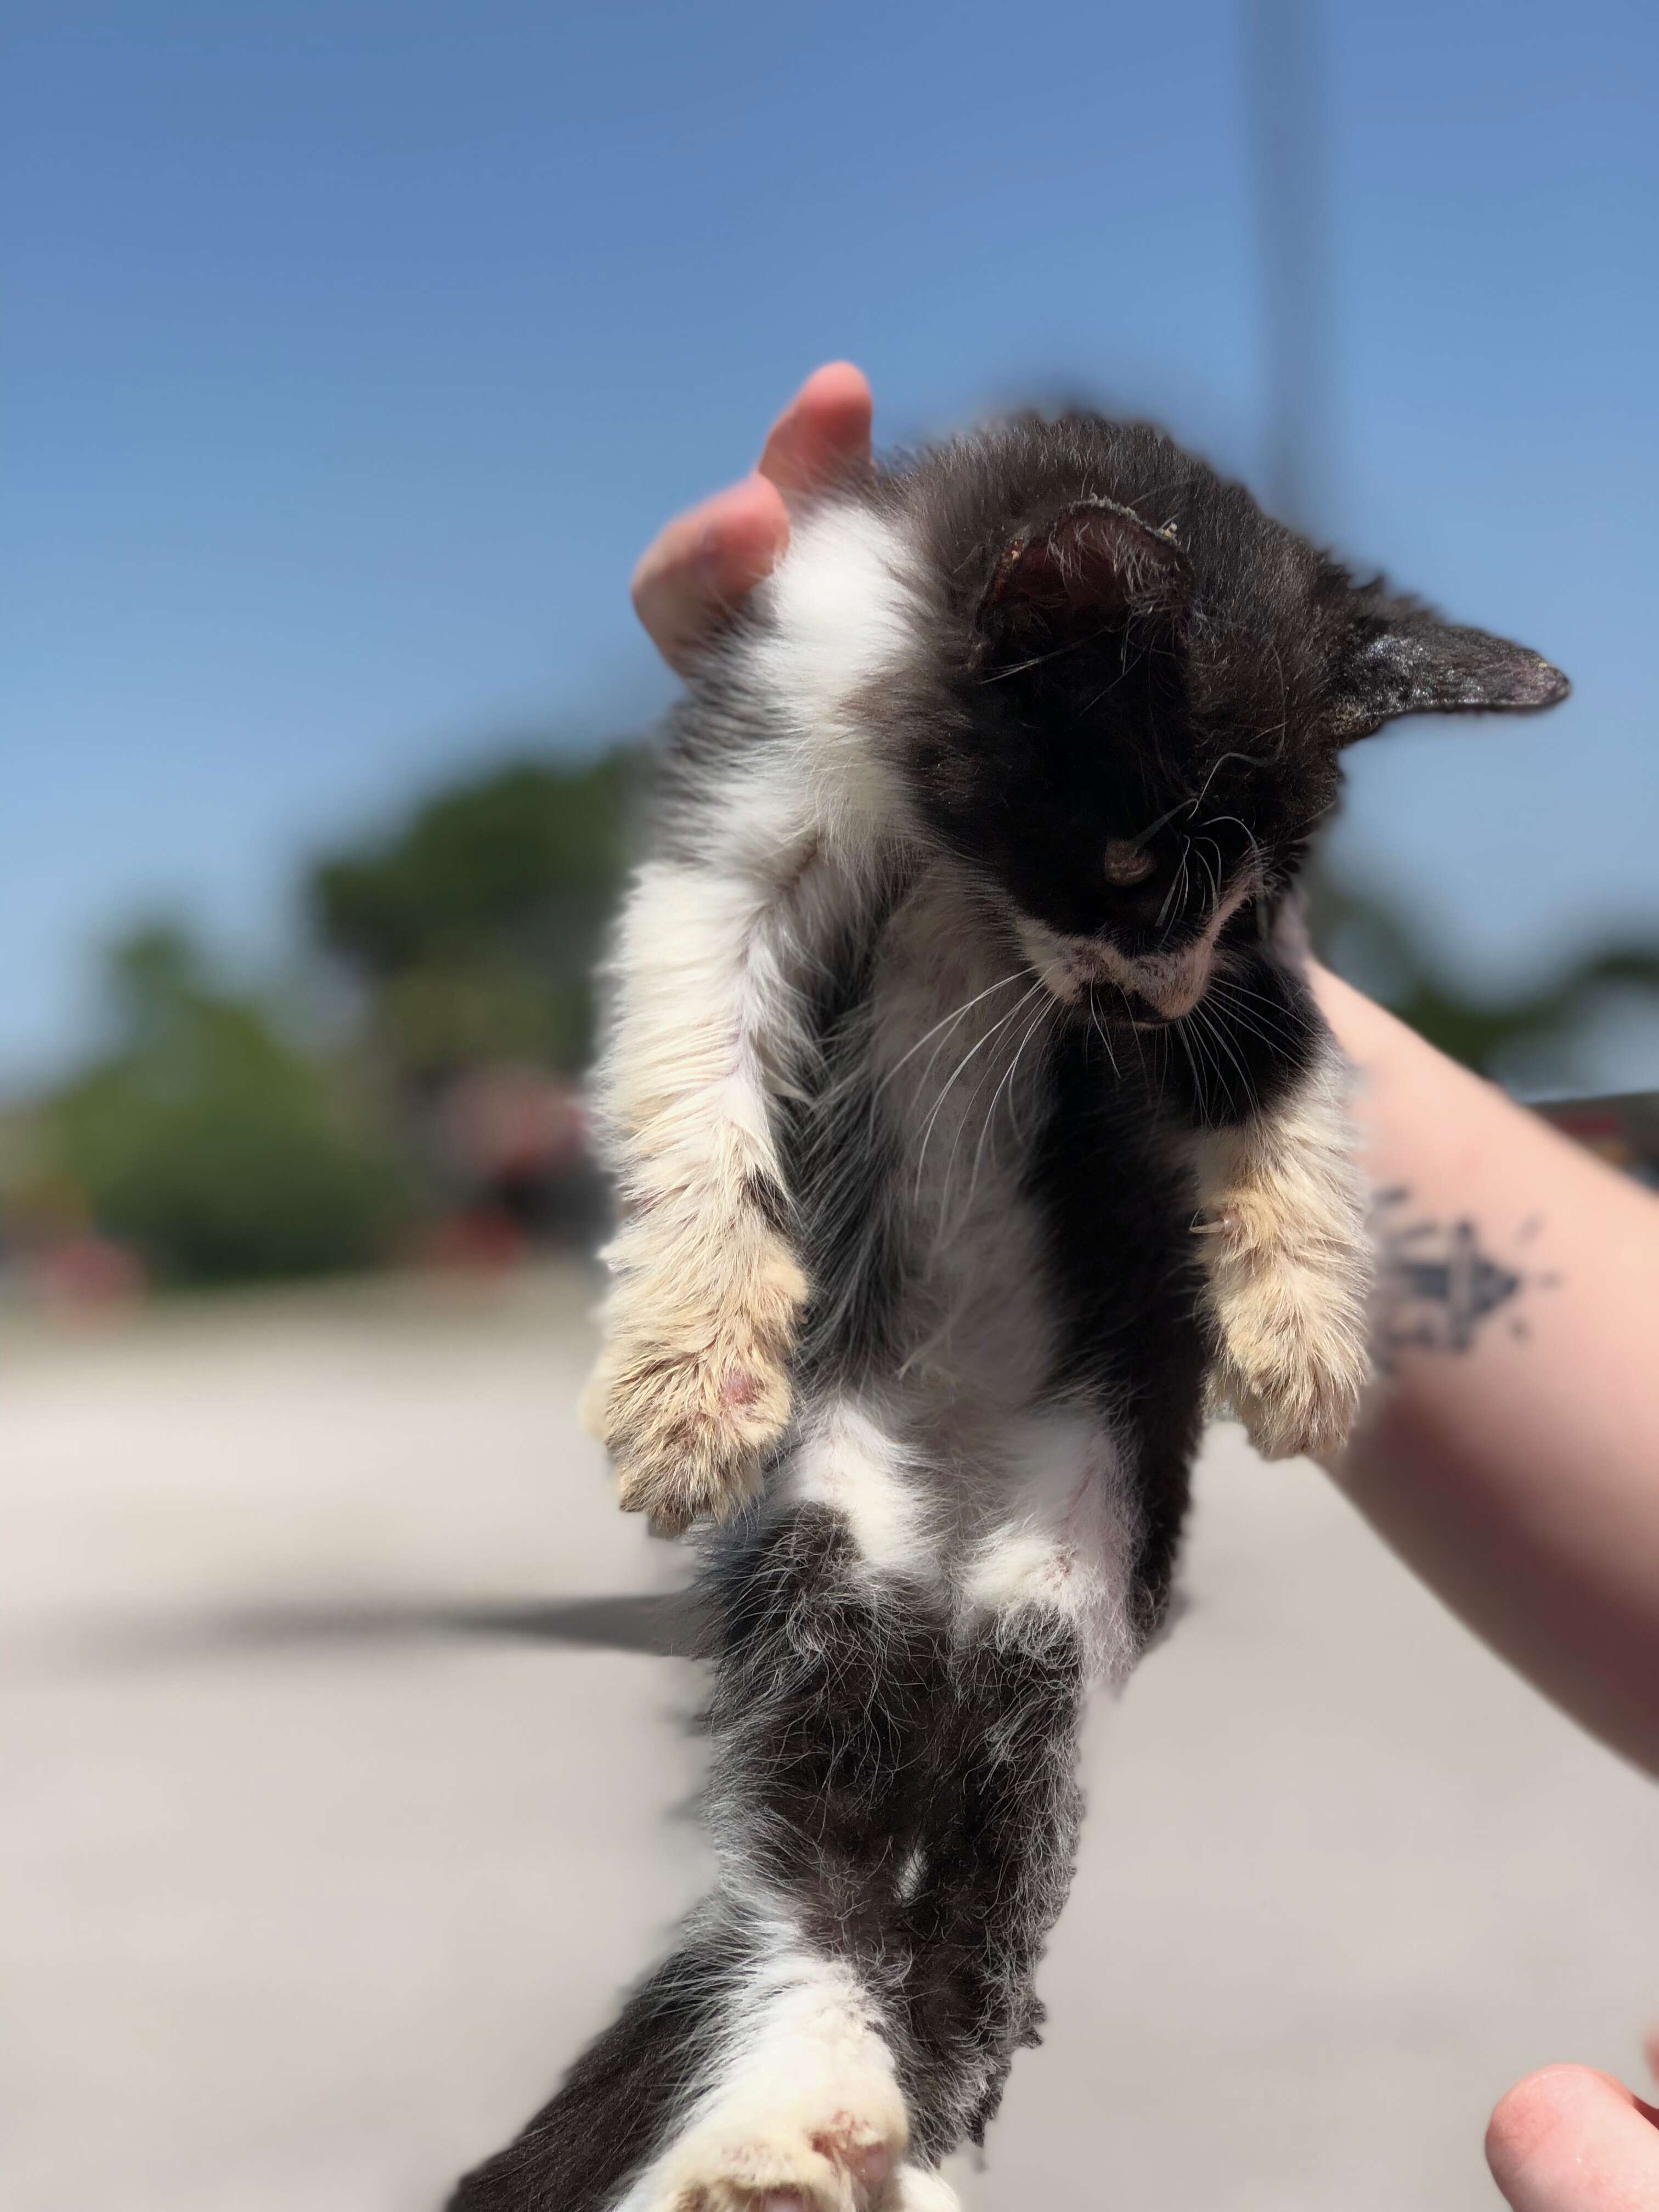 kitten found on sidewalk